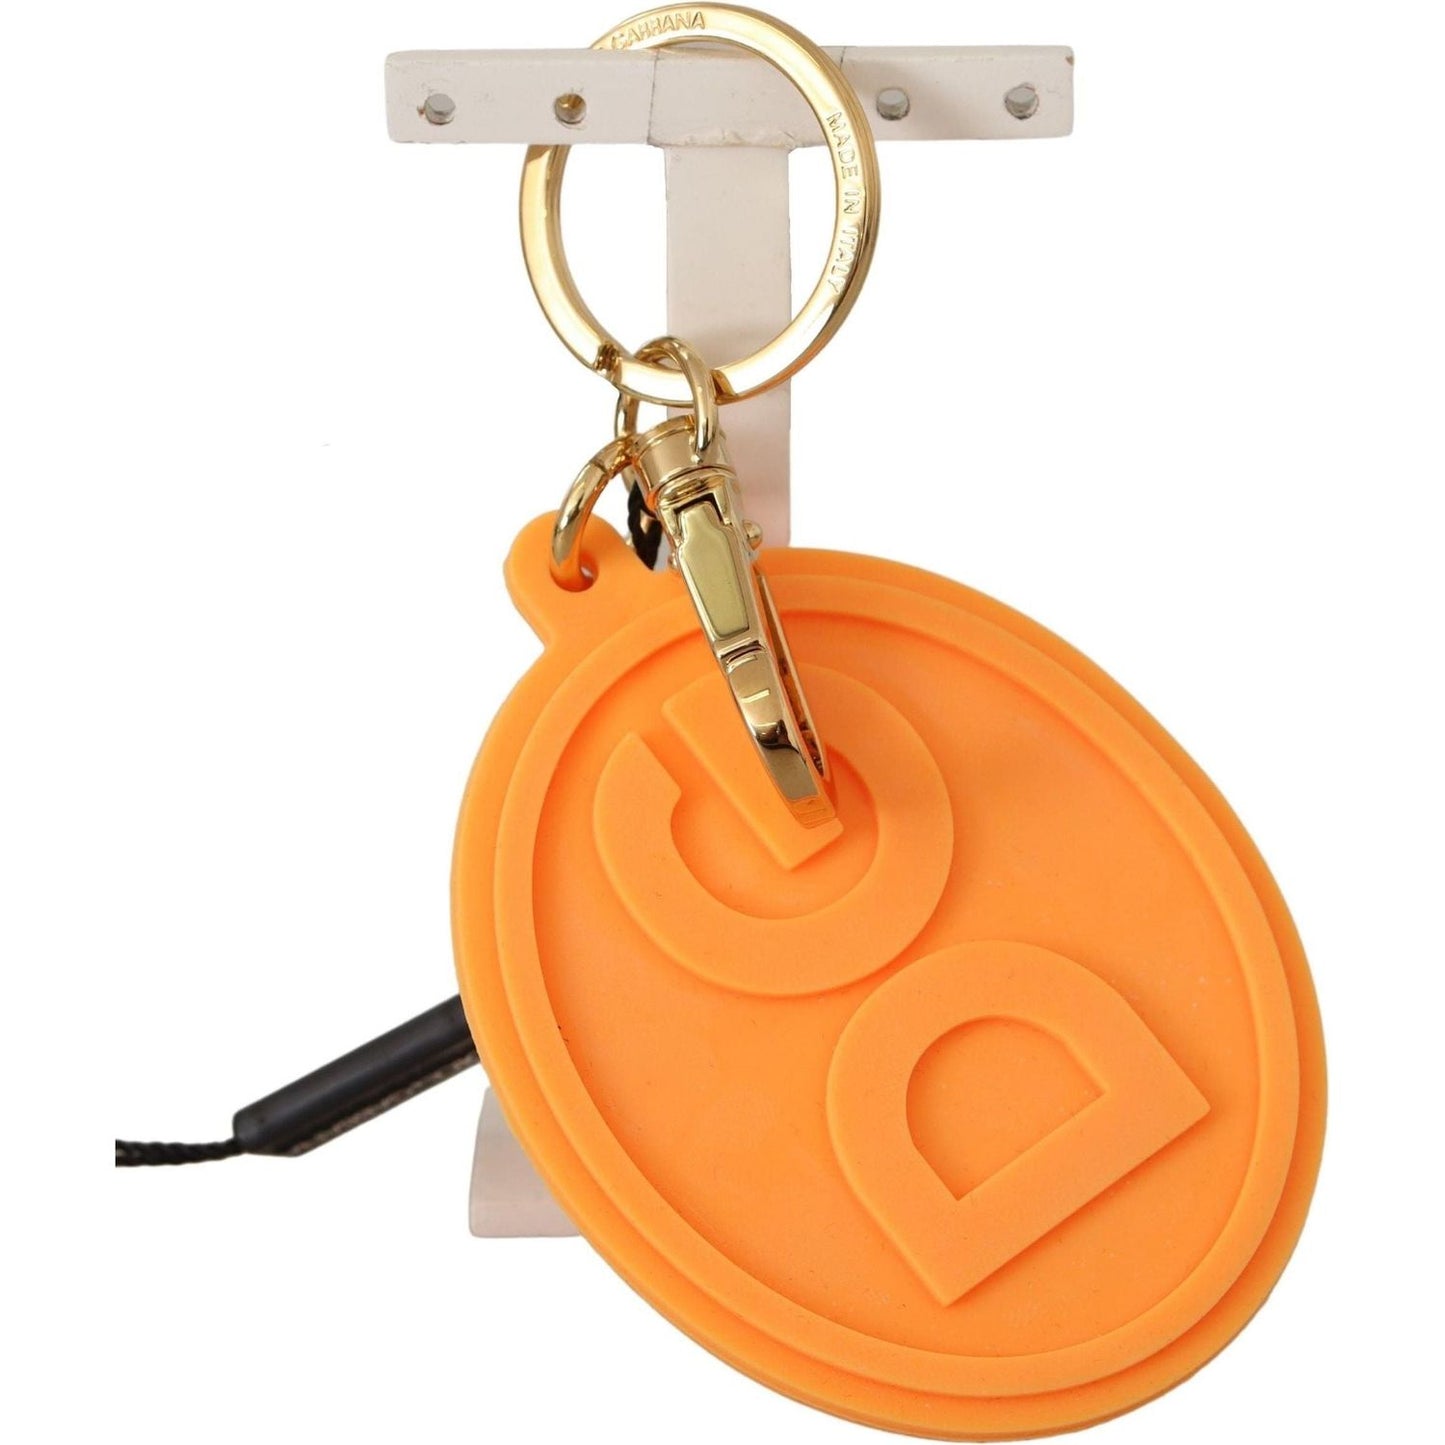 Stunning Orange Gold Keychain & Bag Charm Dolce & Gabbana